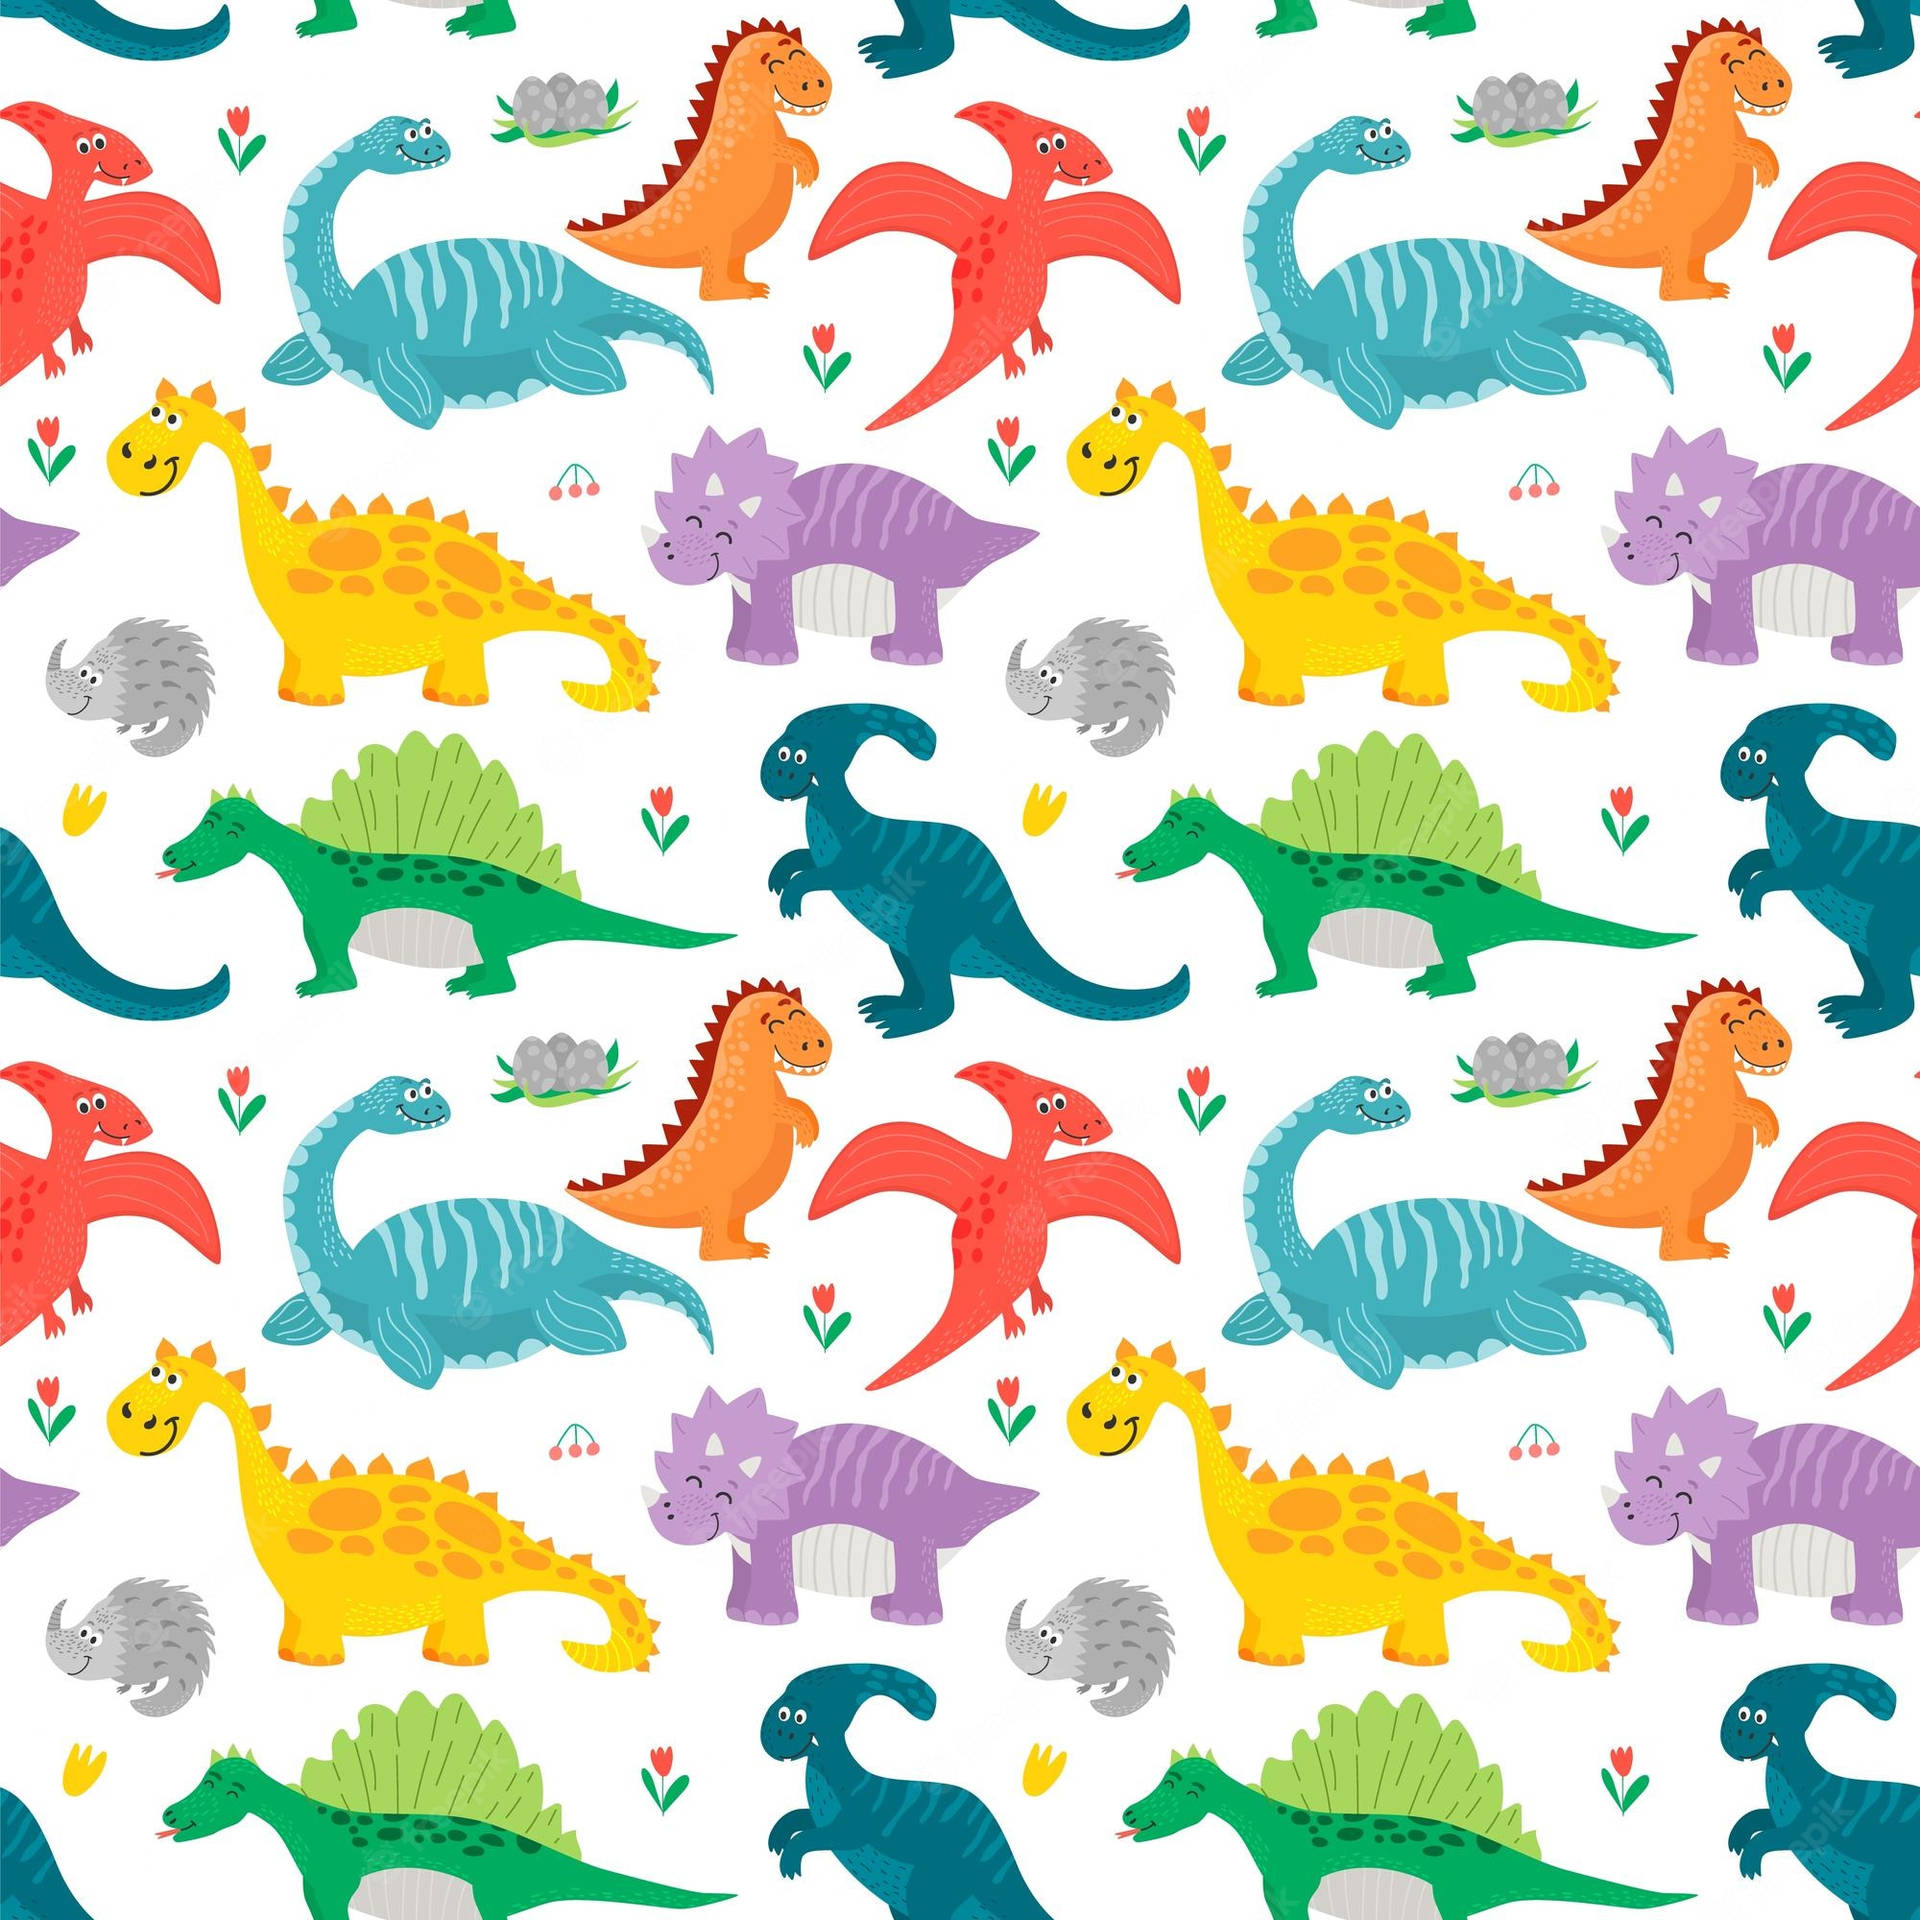 Jurassischeslachen: Ein Lustiger Dinosaurier Macht Einen Spaziergang Wallpaper